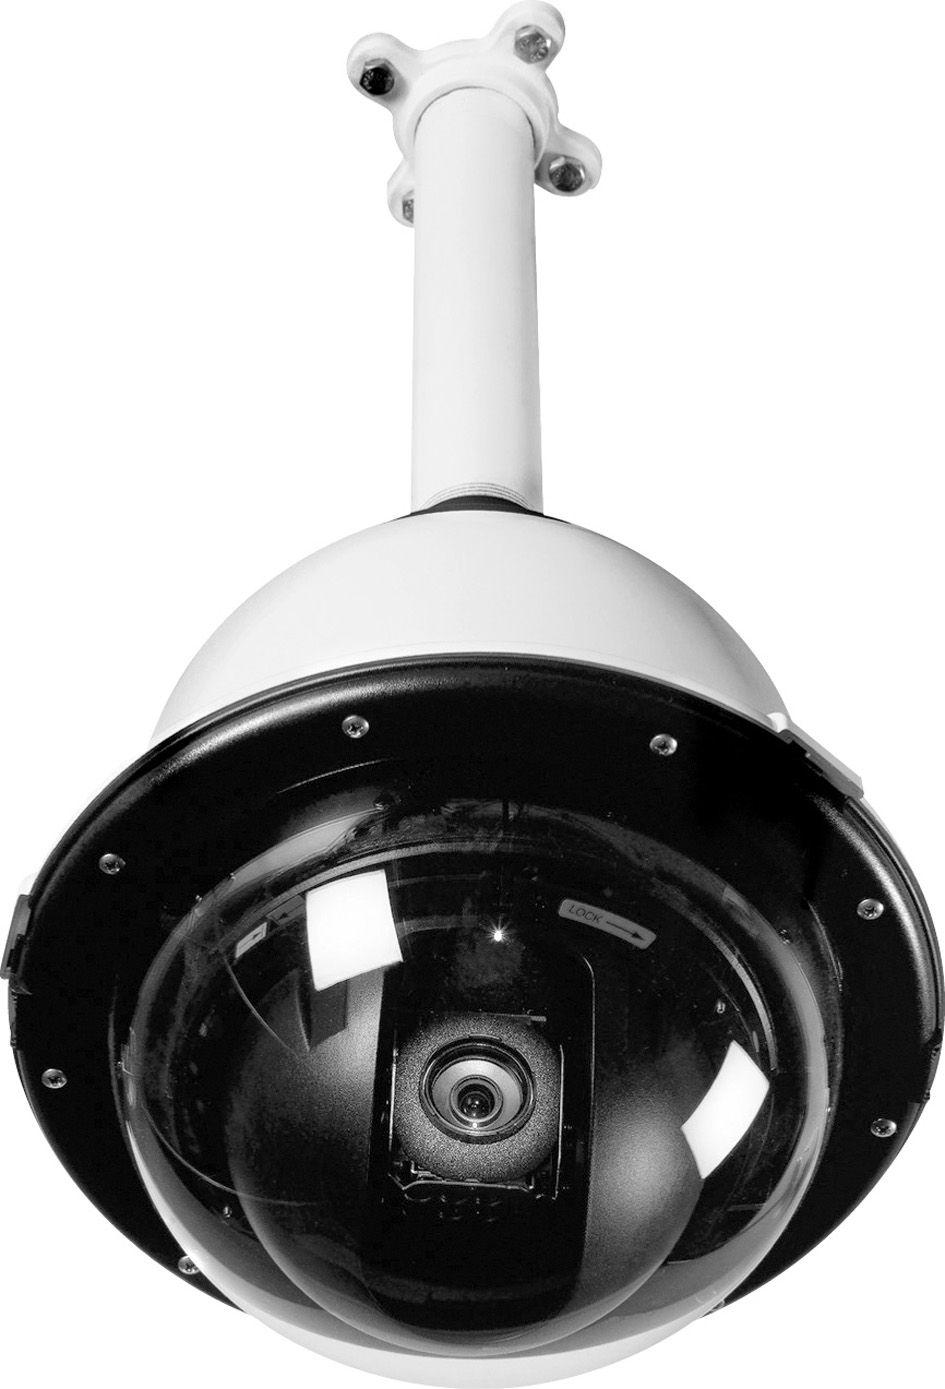 CCTV PRS-sarjan paineistetut domekotelojärjestelmät ulkokäyttöön PRS-sarjan paineistetut domekotelojärjestelmät ulkokäyttöön Paras suojaus pölyä, savusumua, suolaista ilmaa ja kosteutta vastaan.